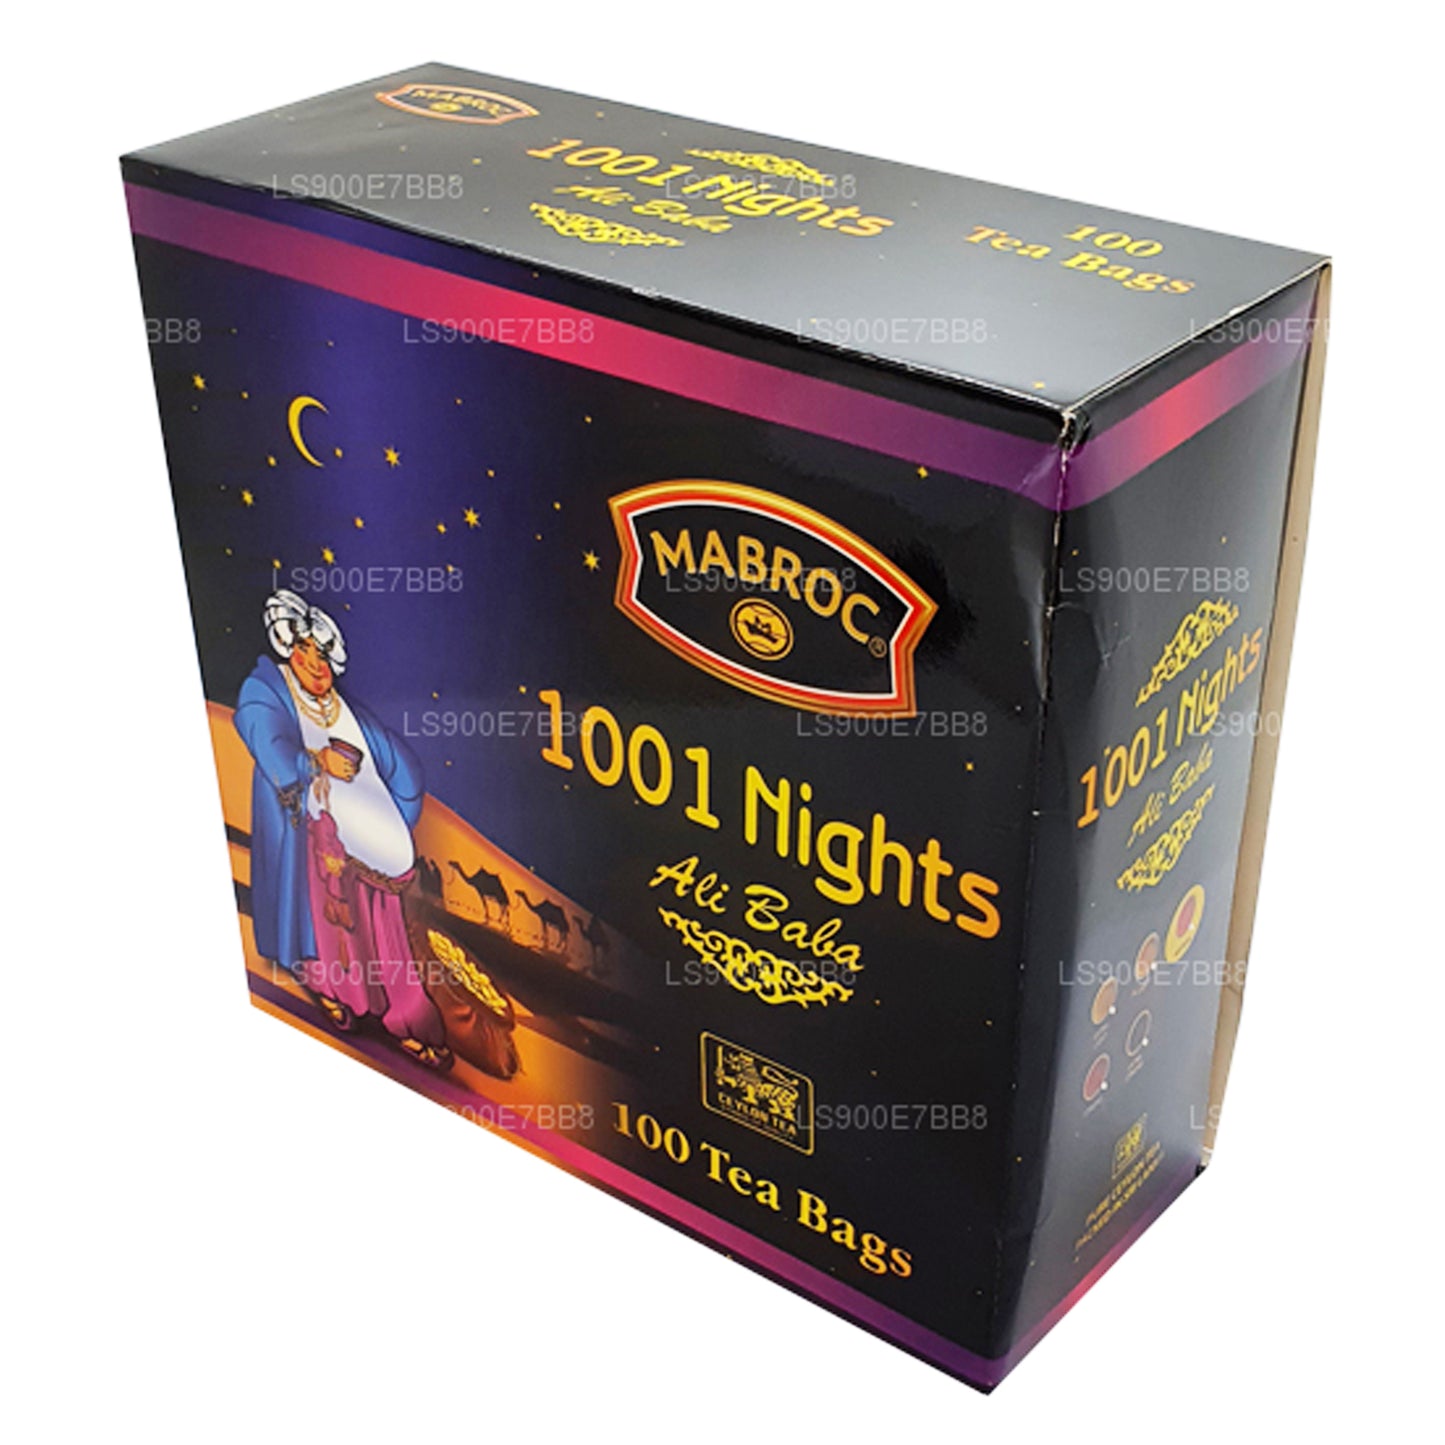 Mabroc Ночь 1001 звезды Али Баба (200 г) 100 пакетиков чая